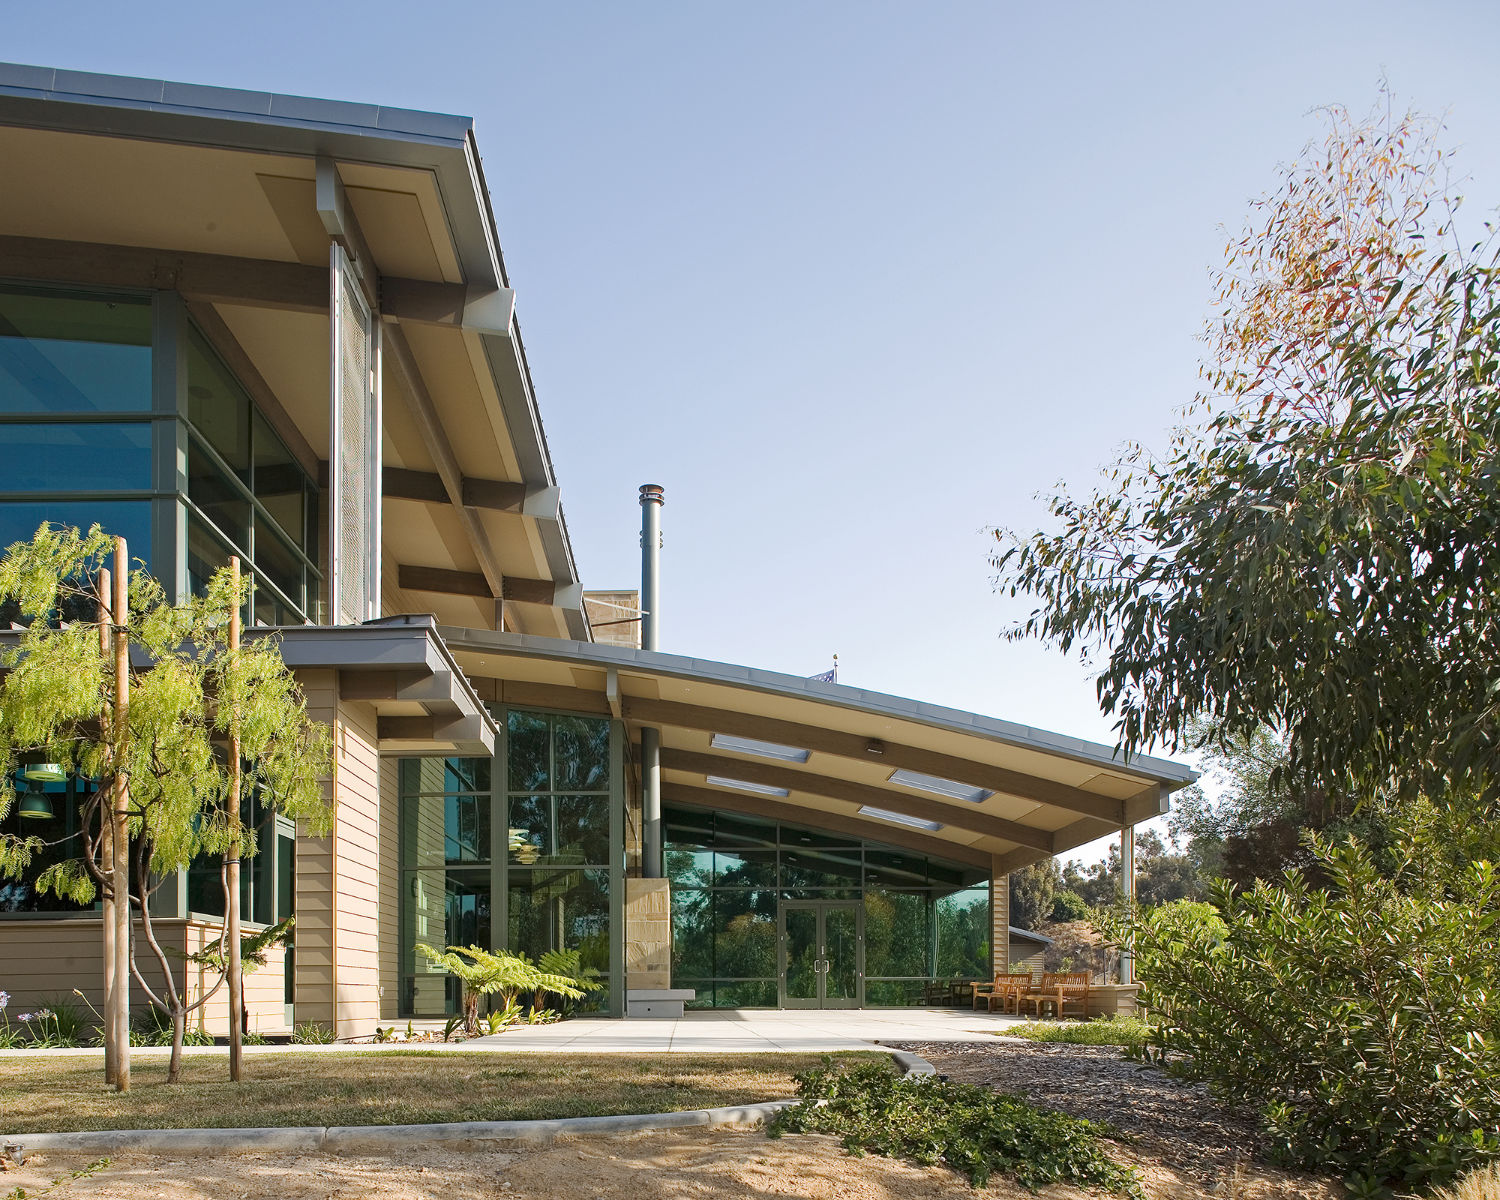 Public Architecture Bonita California Bonita Library